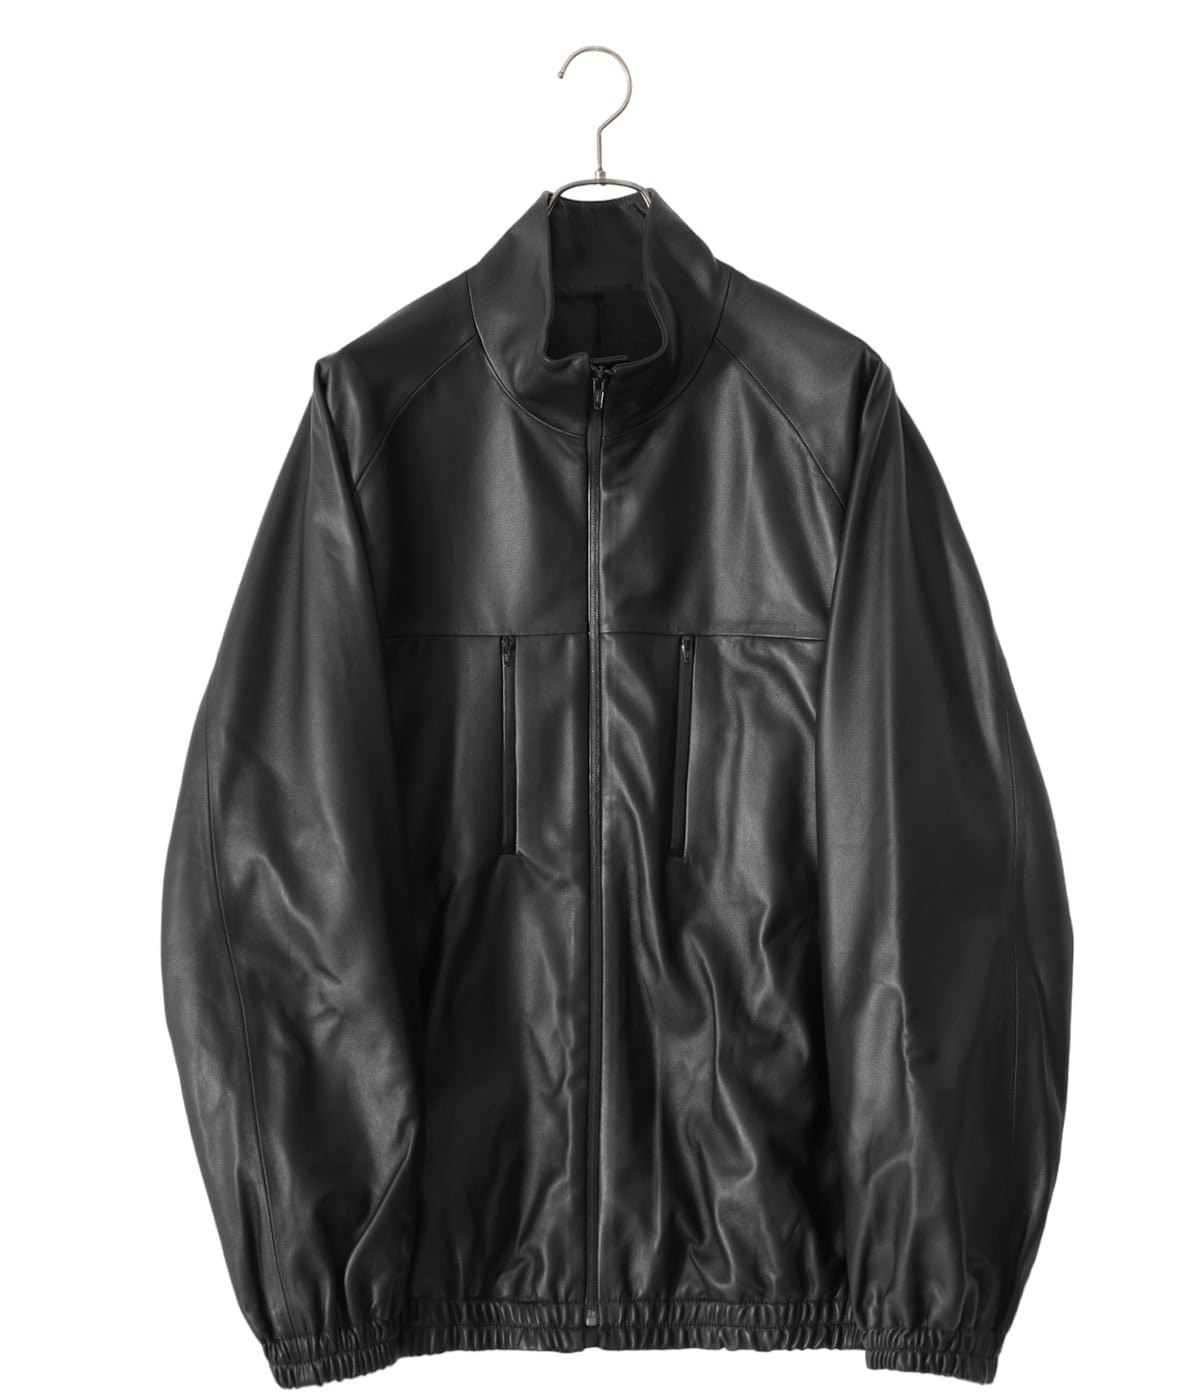 STEIN Leather Windbreaker Jacket S Black | www.innoveering.net